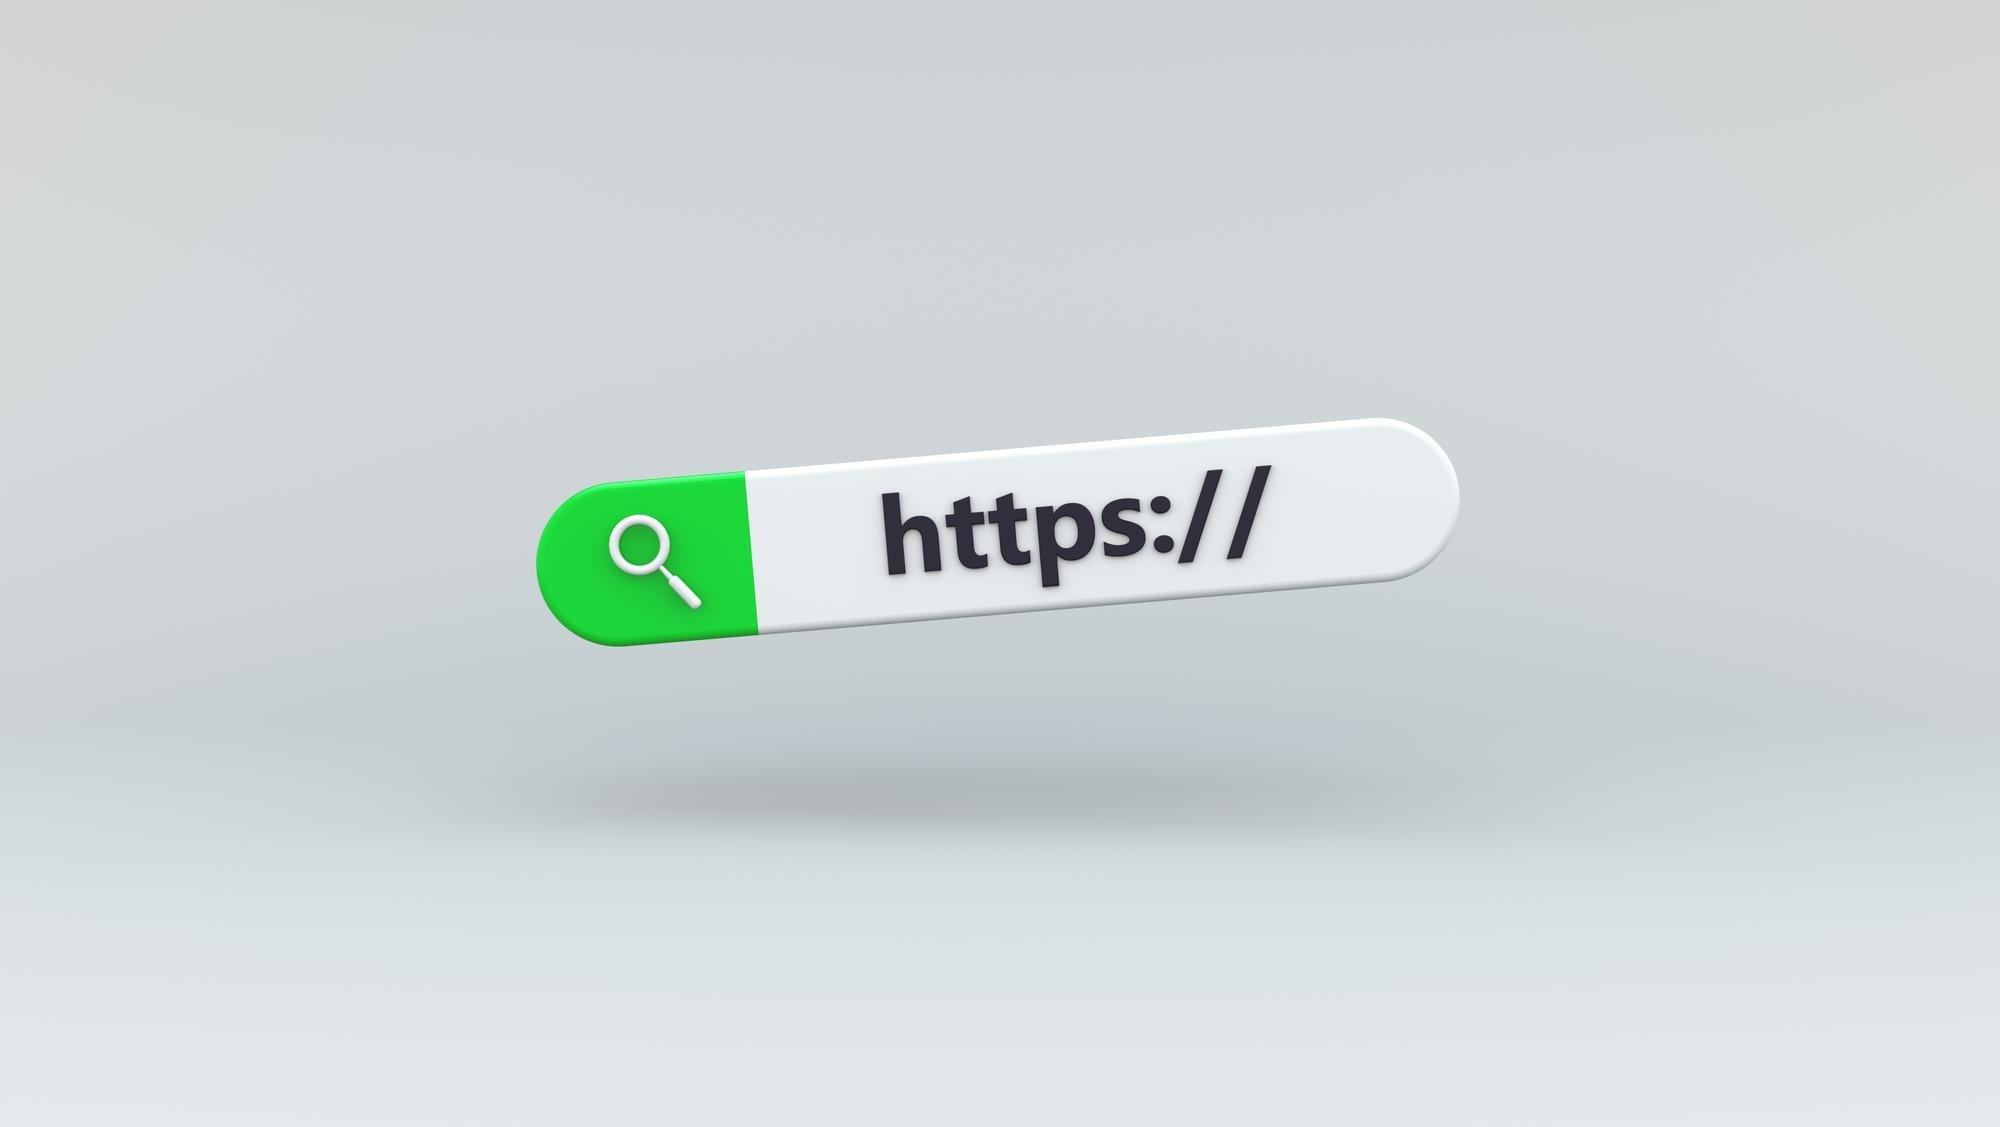 Desmentindo o mito do “HTTPS é um site seguro”